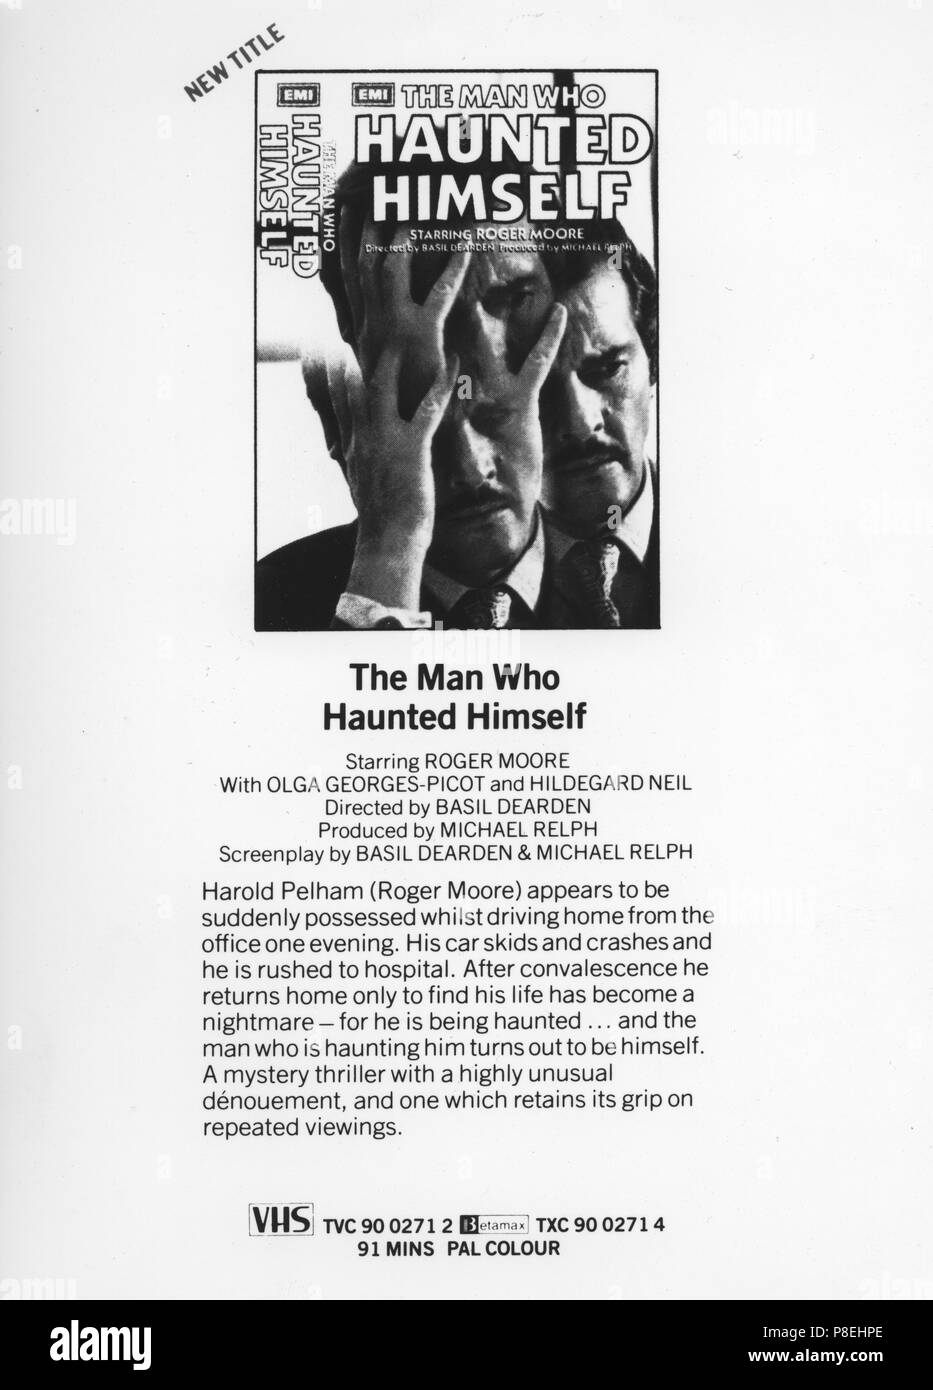 L'uomo che Haunted stesso (1970) informazioni pubblicitarie, Data: 1970 Foto Stock